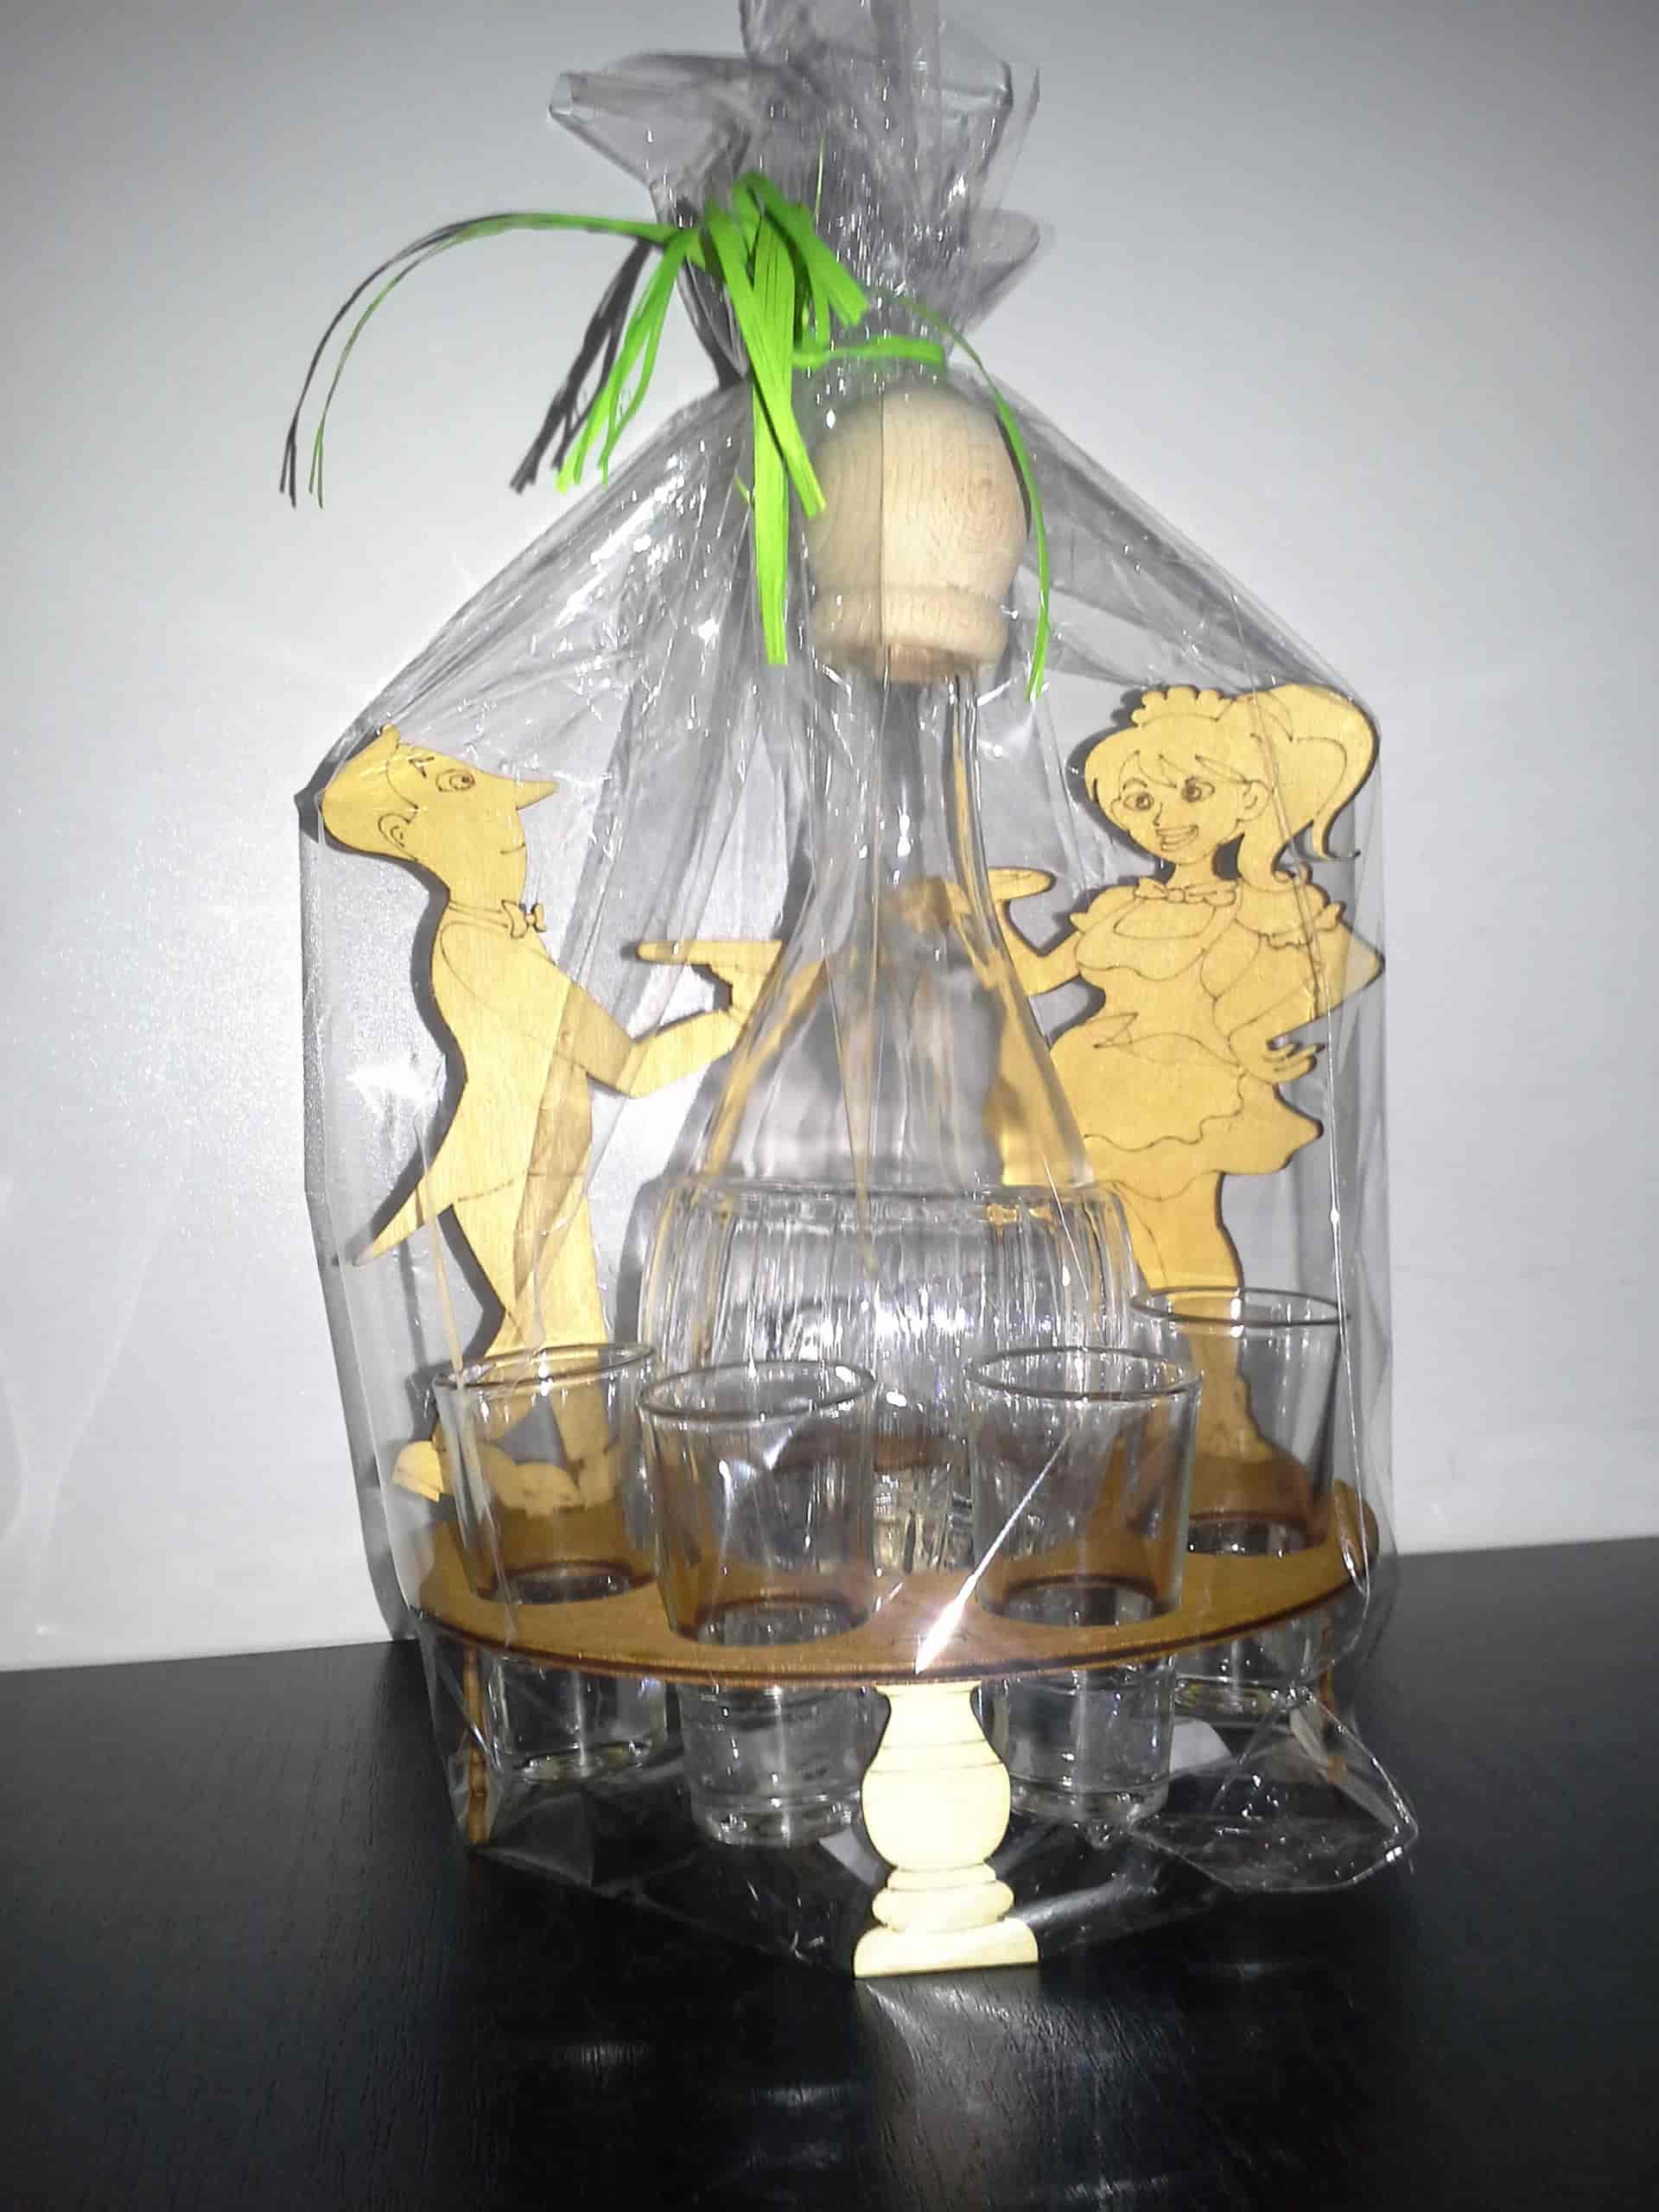 Štamperlíky s fľašou na drevenom stojane v motívom čašníčky a čašníka